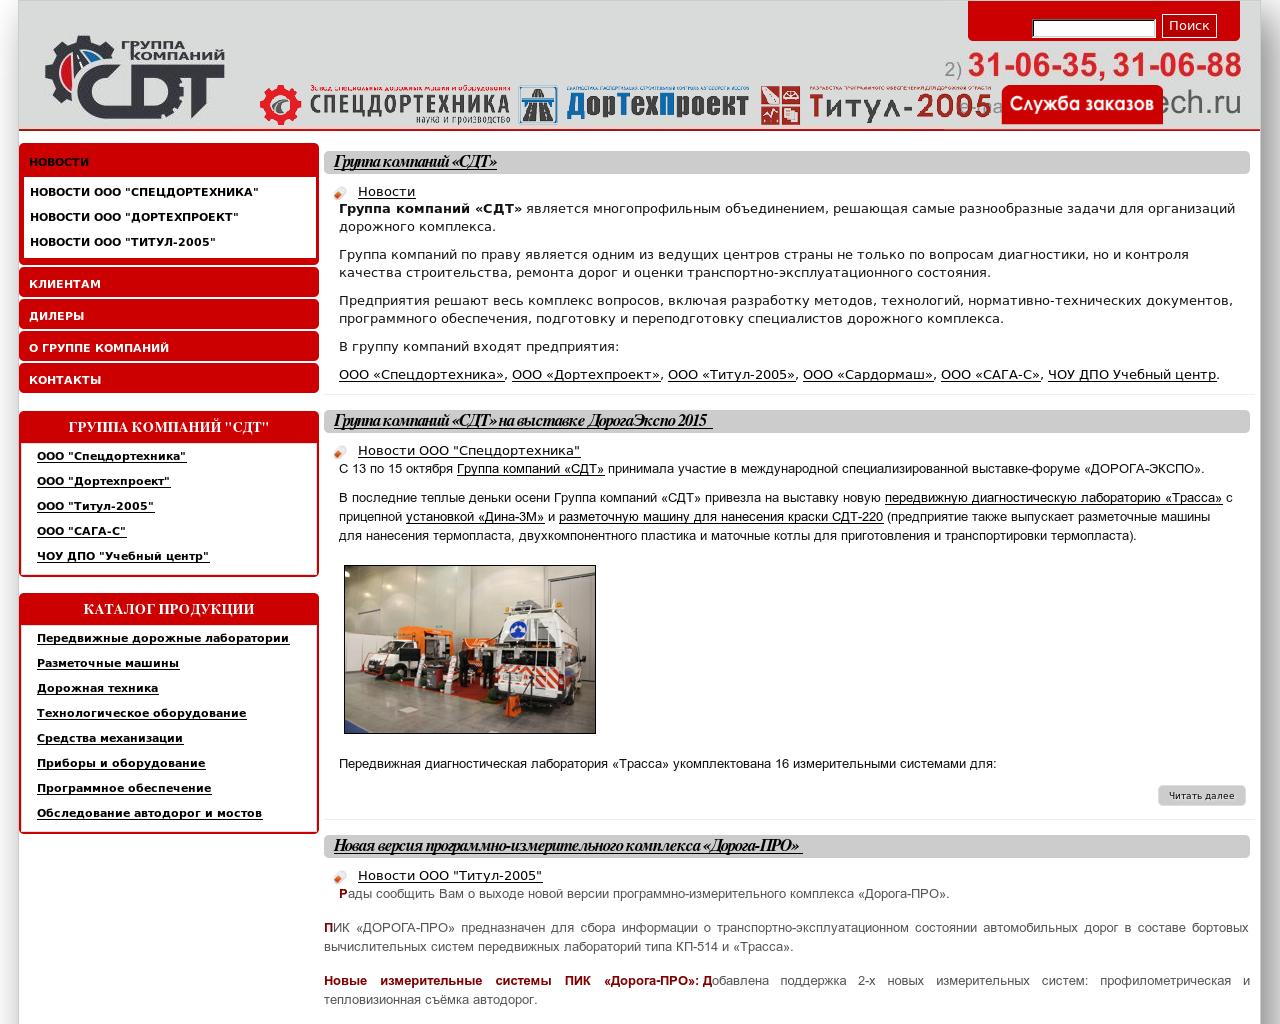 Изображение сайта rdt.ru в разрешении 1280x1024